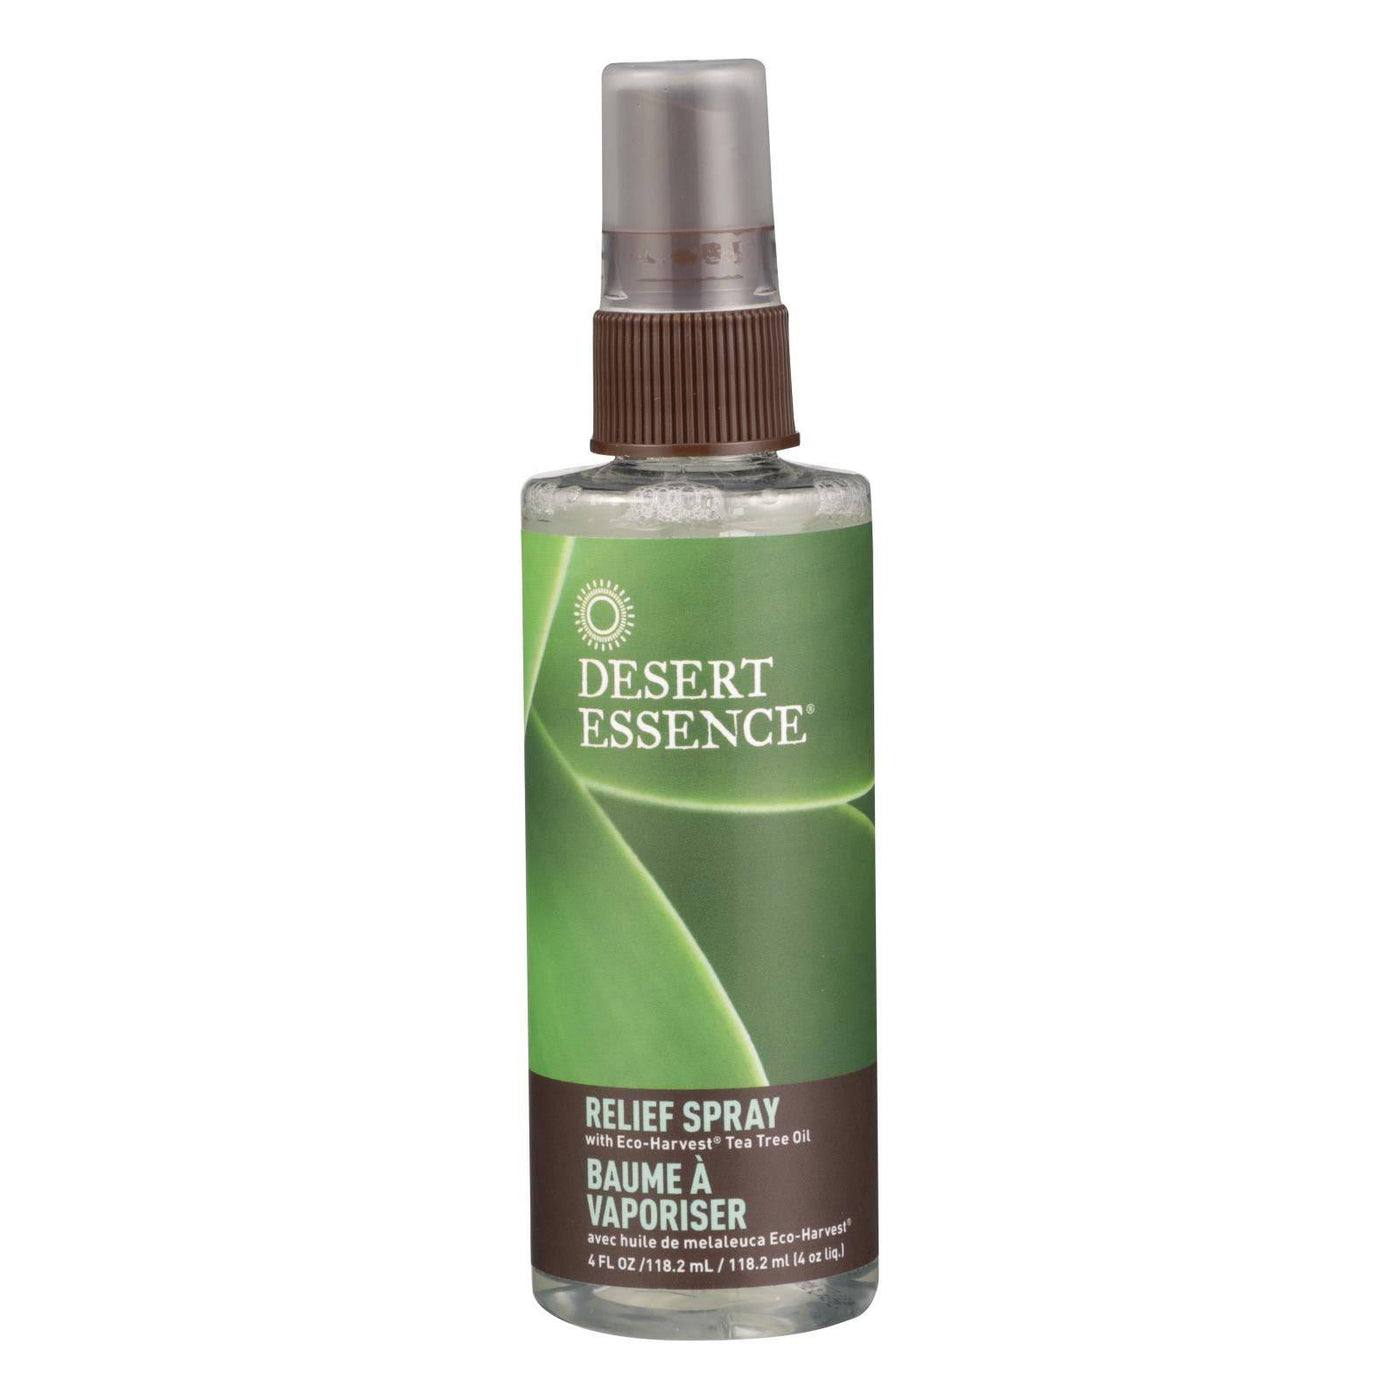 Desert Essence - Relief Spray - 4 Fl Oz | OnlyNaturals.us